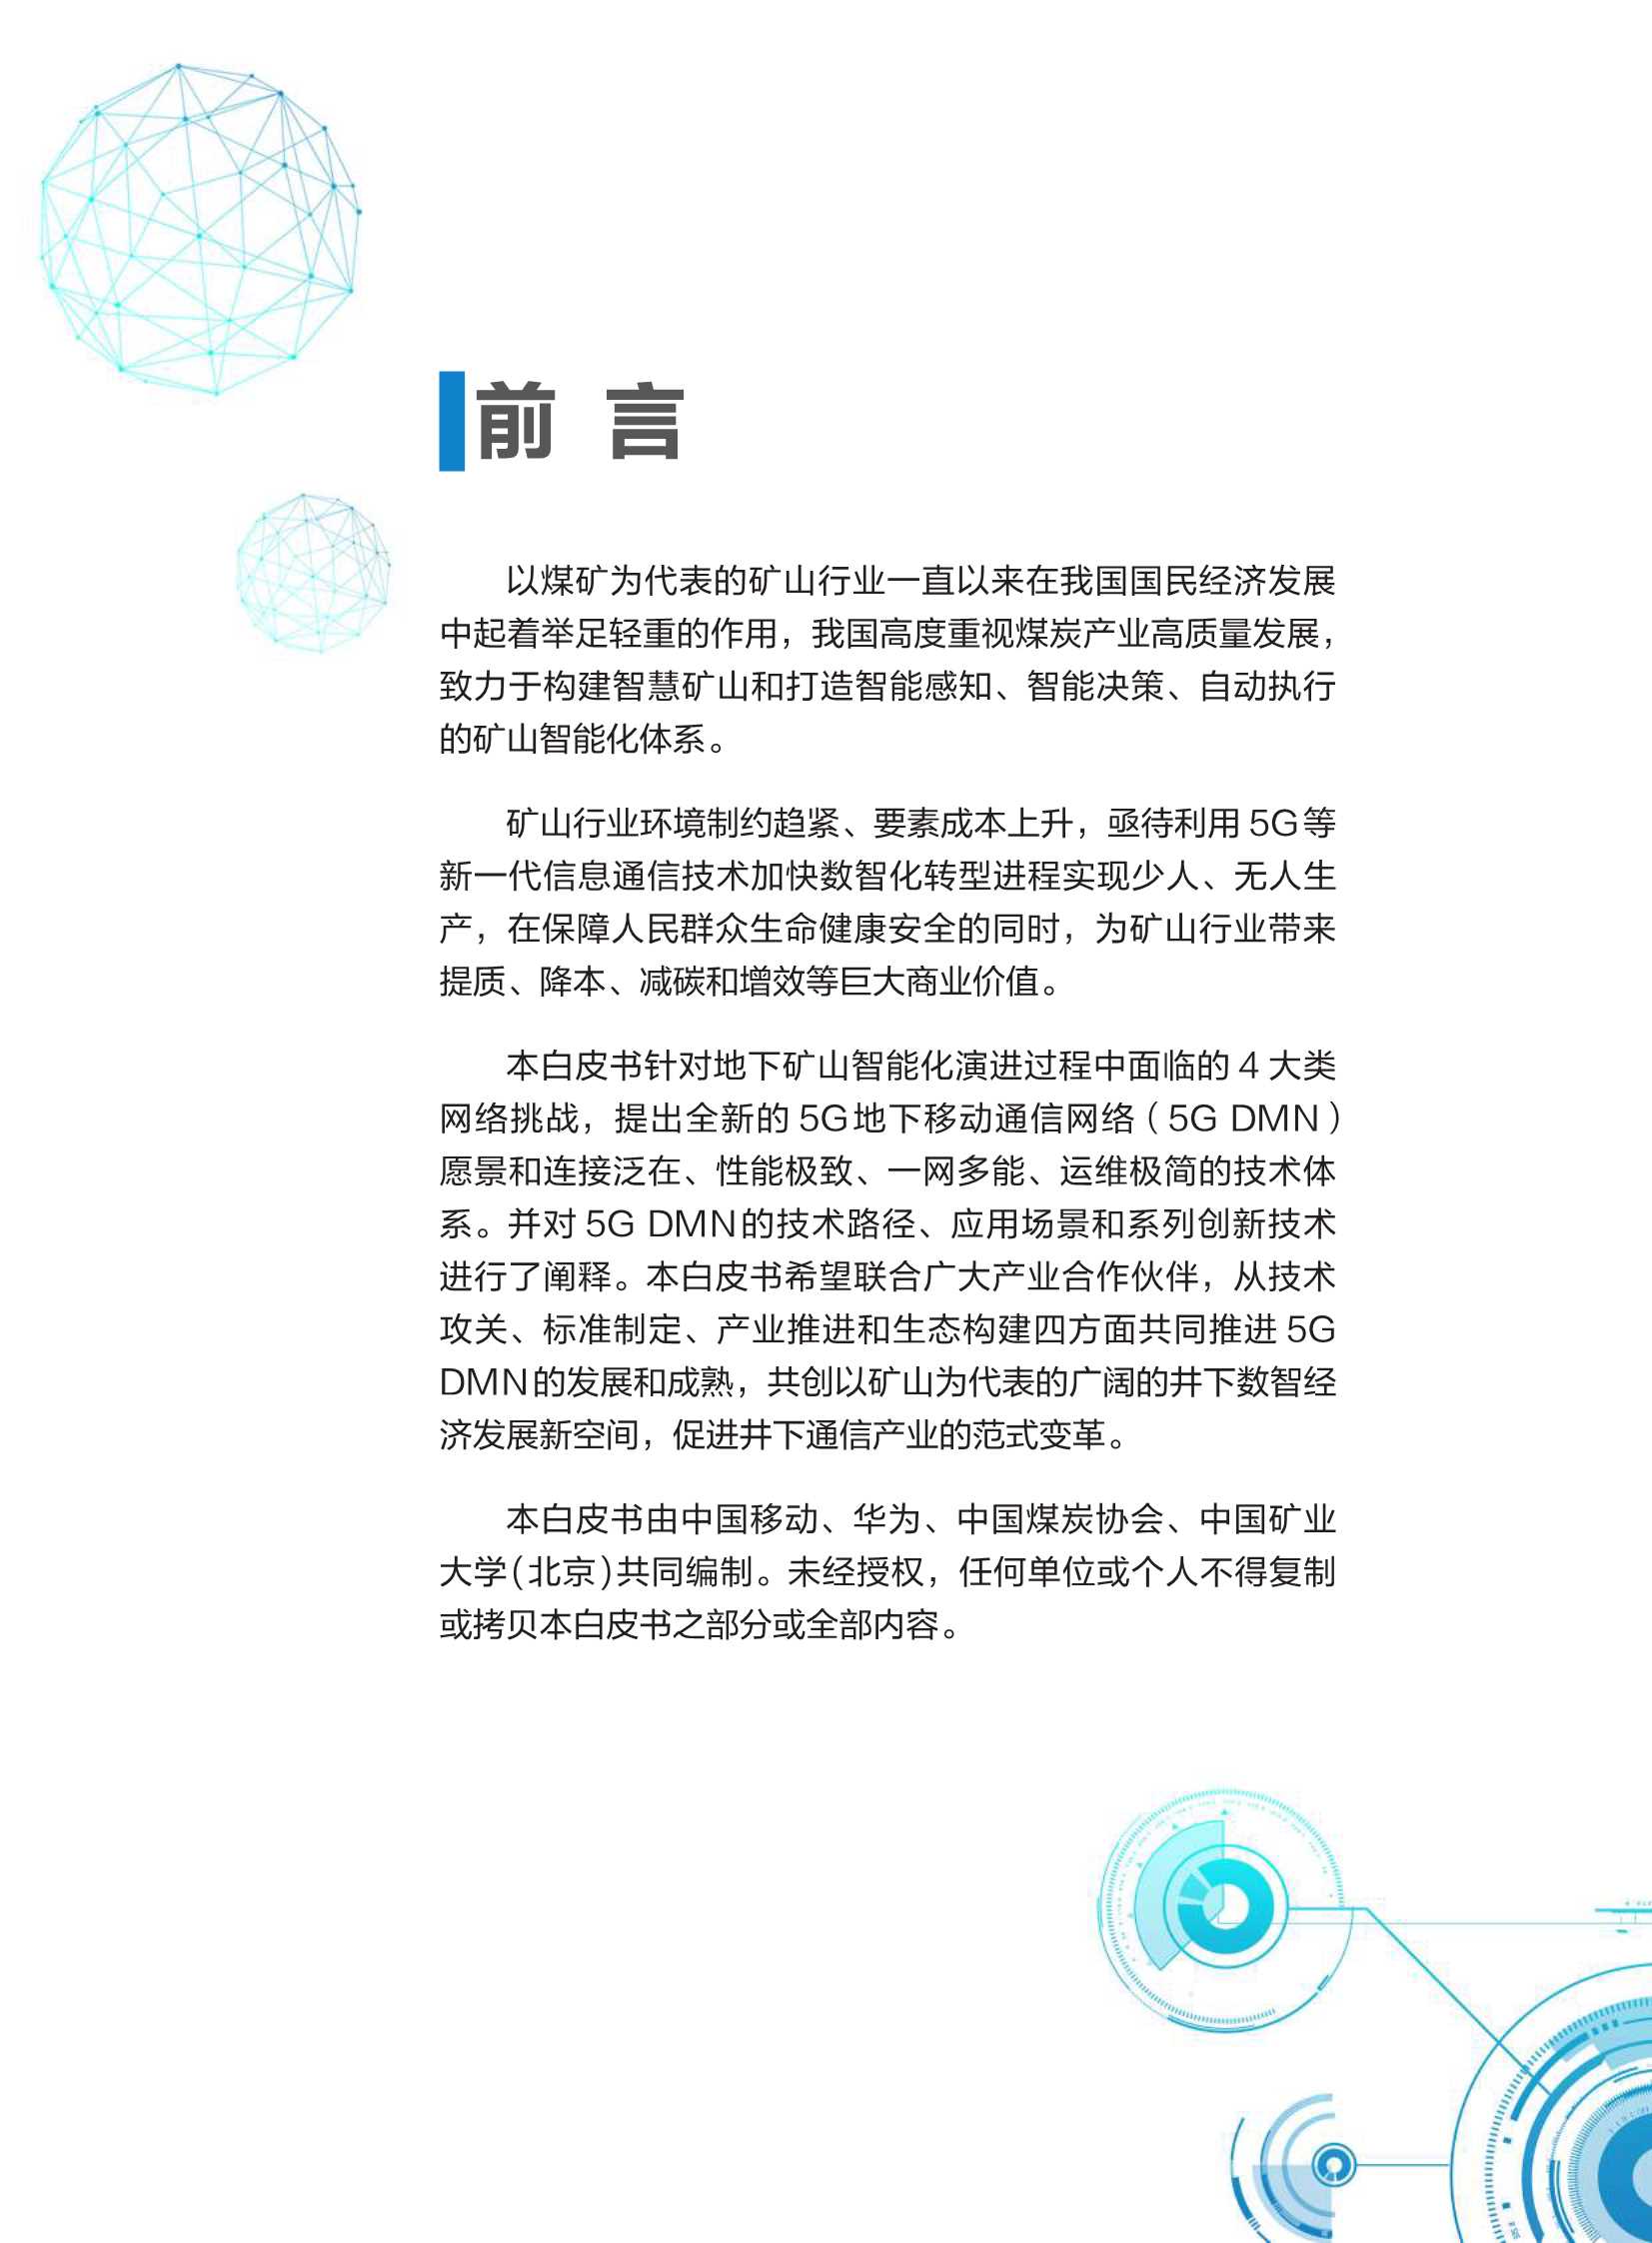 中国移动-互联网行业5G地下移动通信网络（5G DMN）白皮书2021版：构建地下智能化综合性通信网络-2021.11-26页